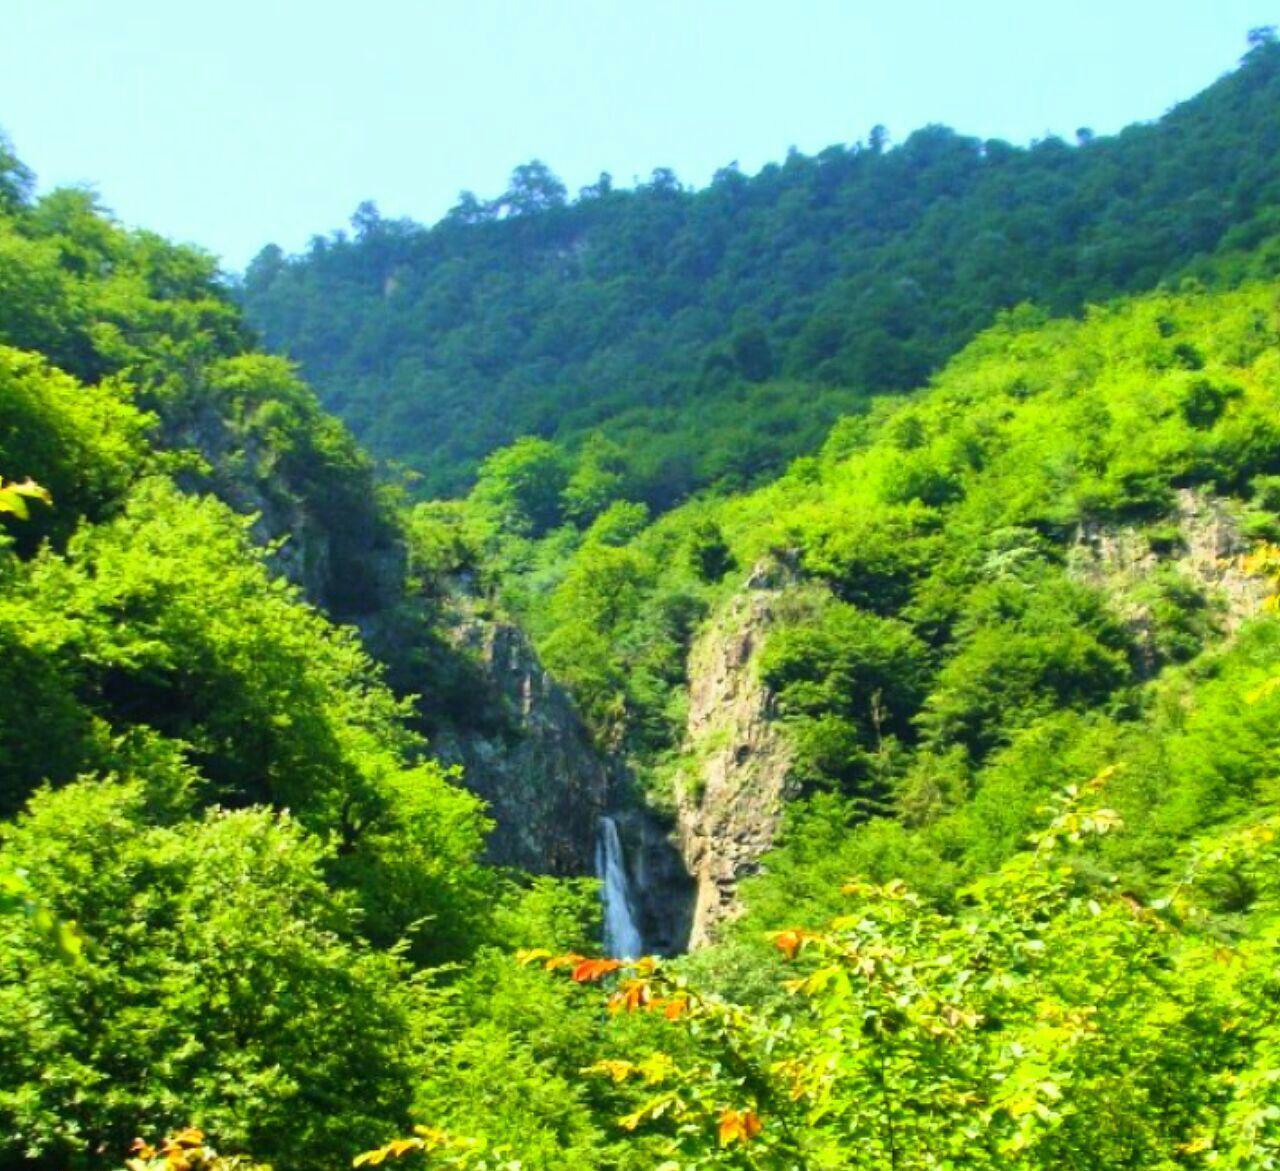 آبشار #میلاش زیباترین آبشار منطقه رحیم آباد  روستای #میلاش در30کیلومتری رحیم آباد قرار گرفته است #گیلان . **abdolla**